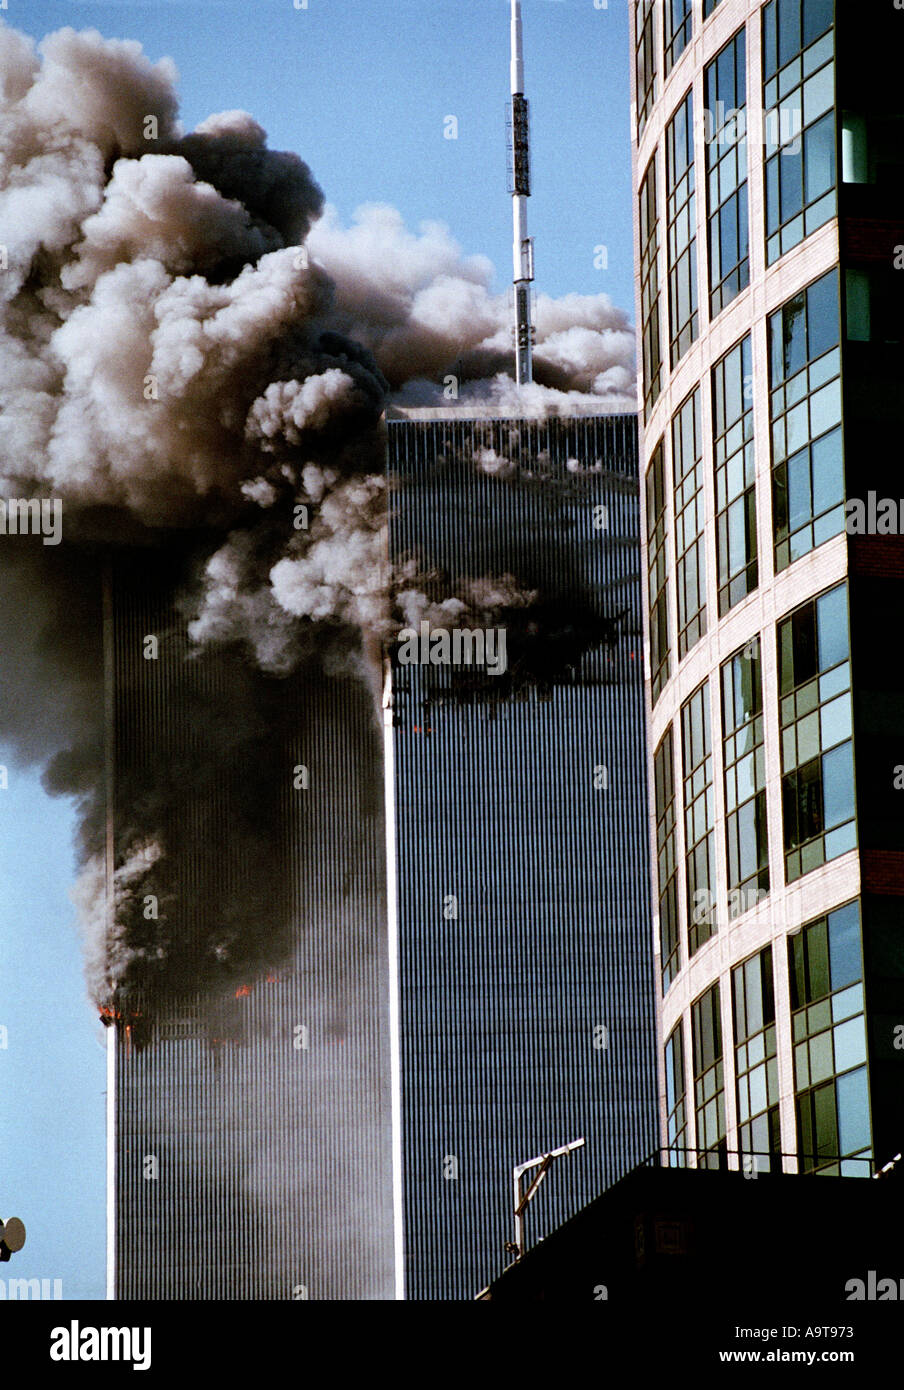 World Trade Center attentato terroristico dell'11 settembre 2001 Foto Stock